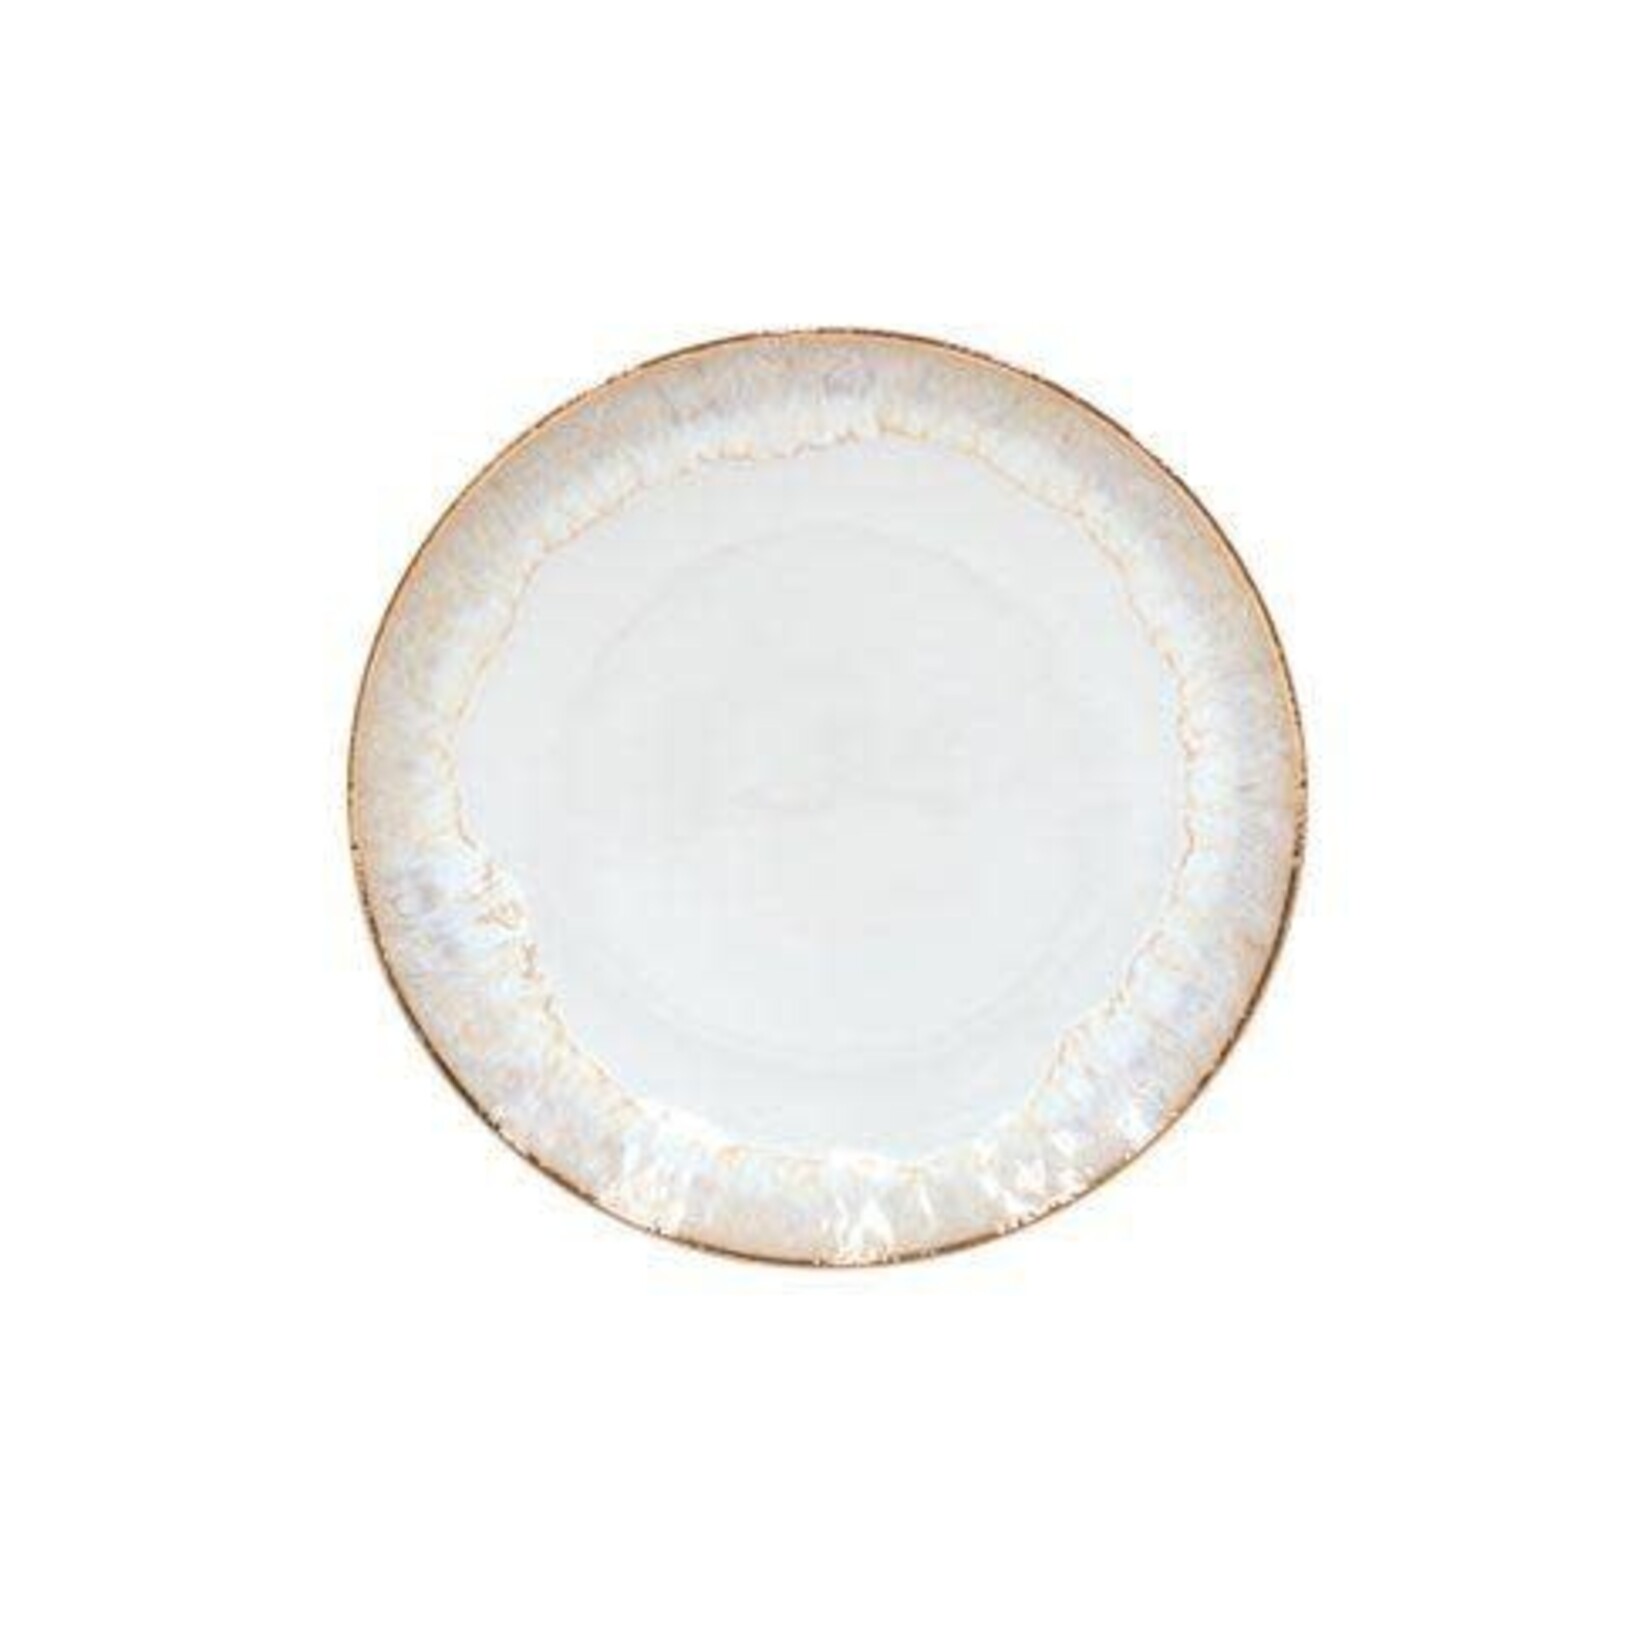 CASAFINA LIVING Taormina Dinner Plate, White-Gold